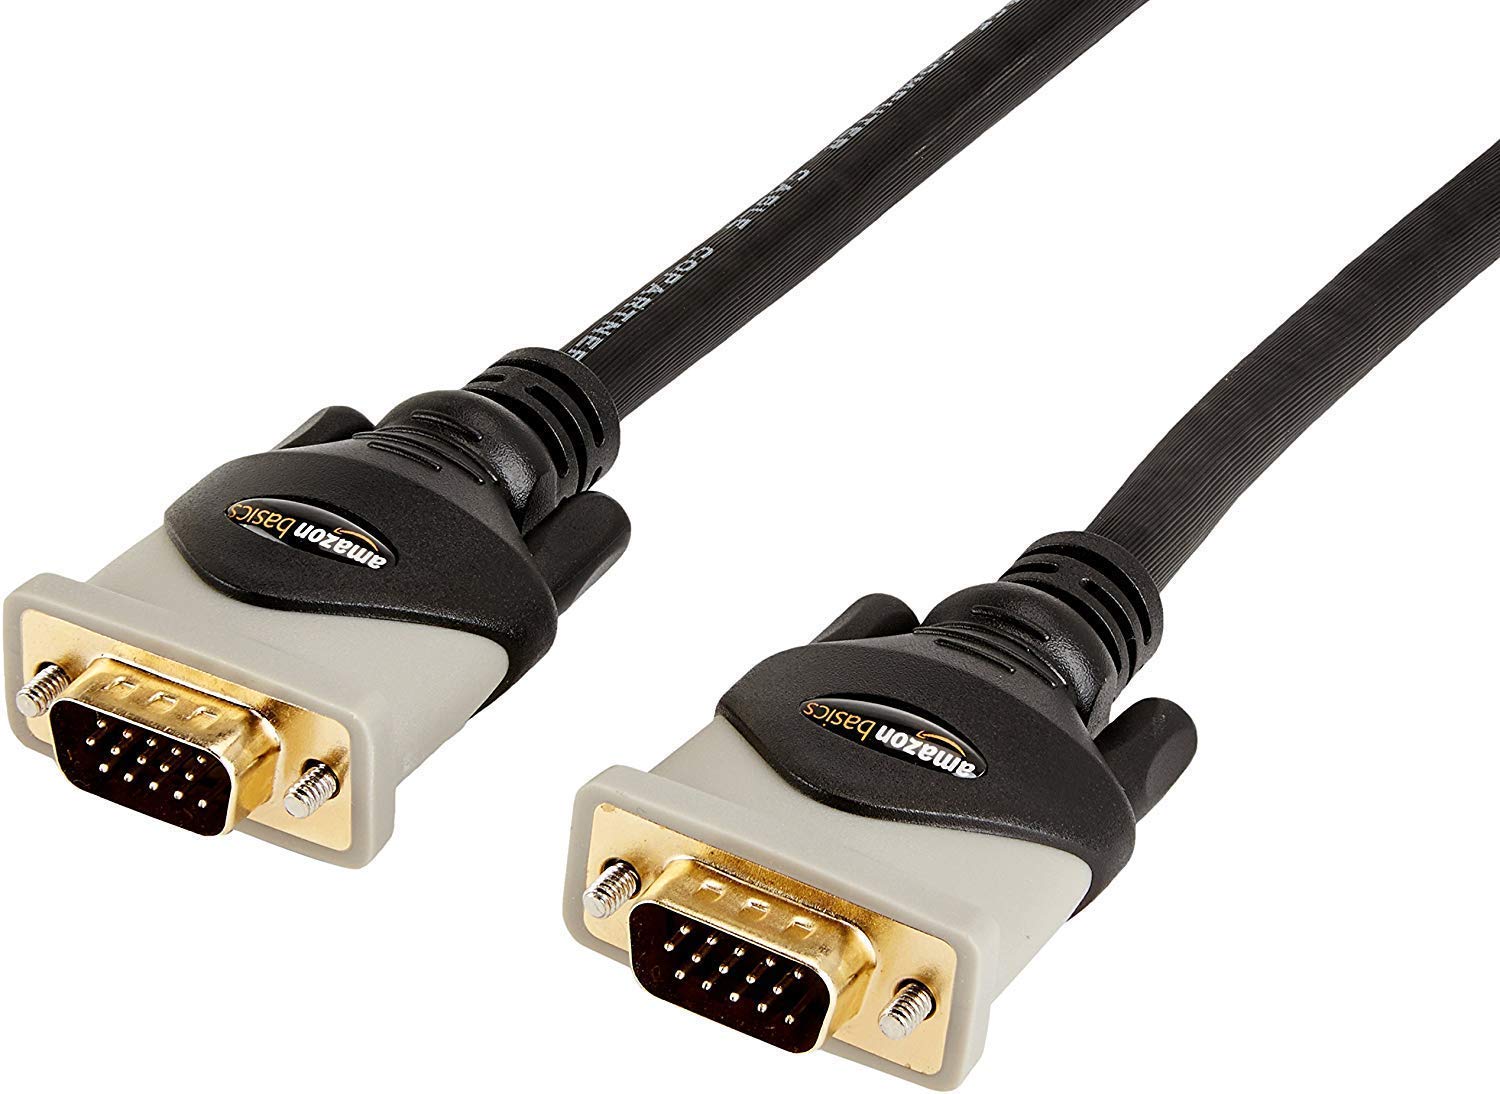 Cables Vga De Alta Resolución: Mejora Calidad De Imagen En Computadoras - Mercadillo5